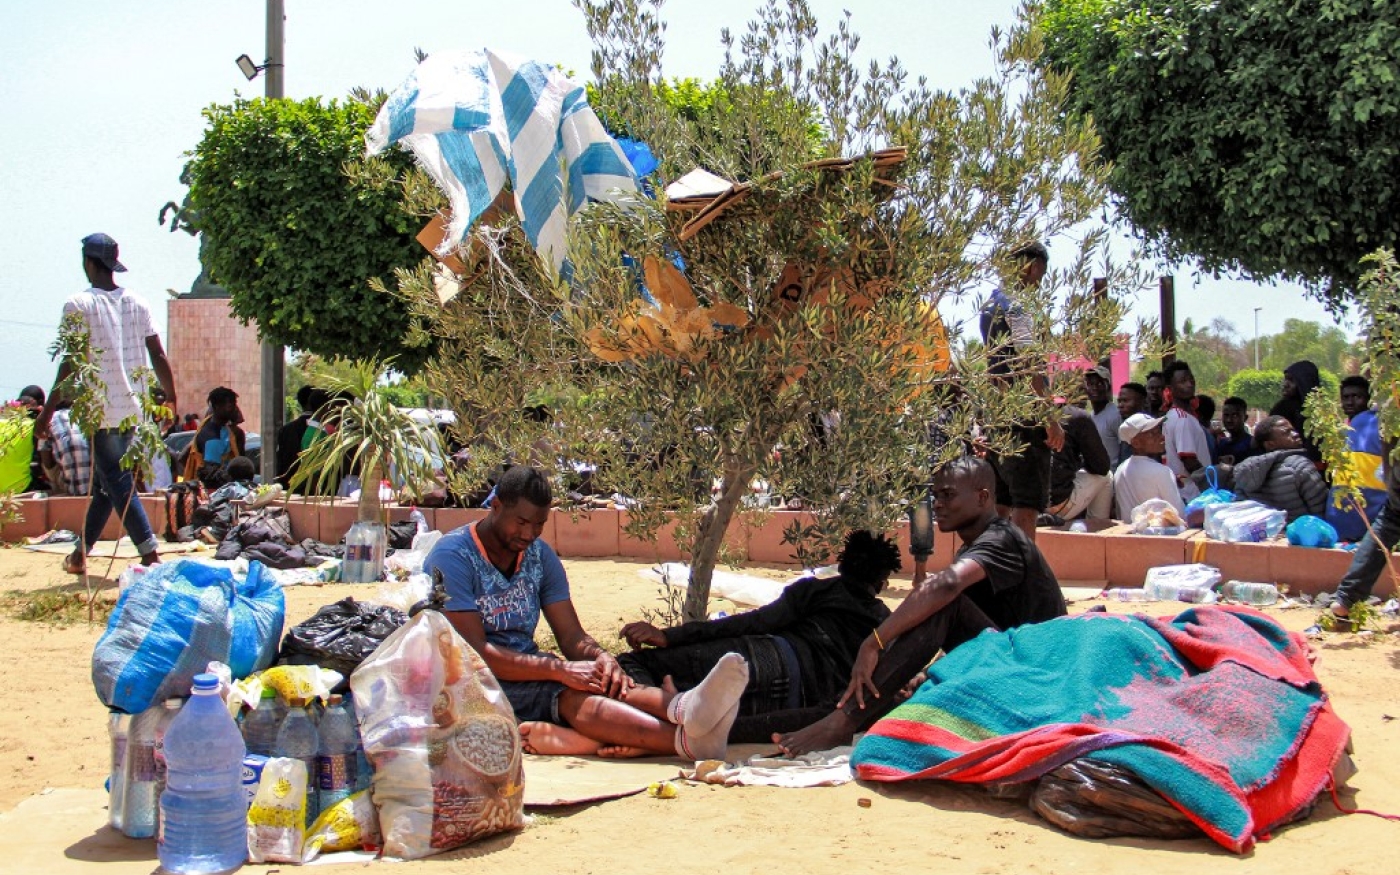 Les migrants subsahariens ont été transférés hors de Sfax où des heurts ont éclatés avec les habitants (AFP/Houssem Zouari)